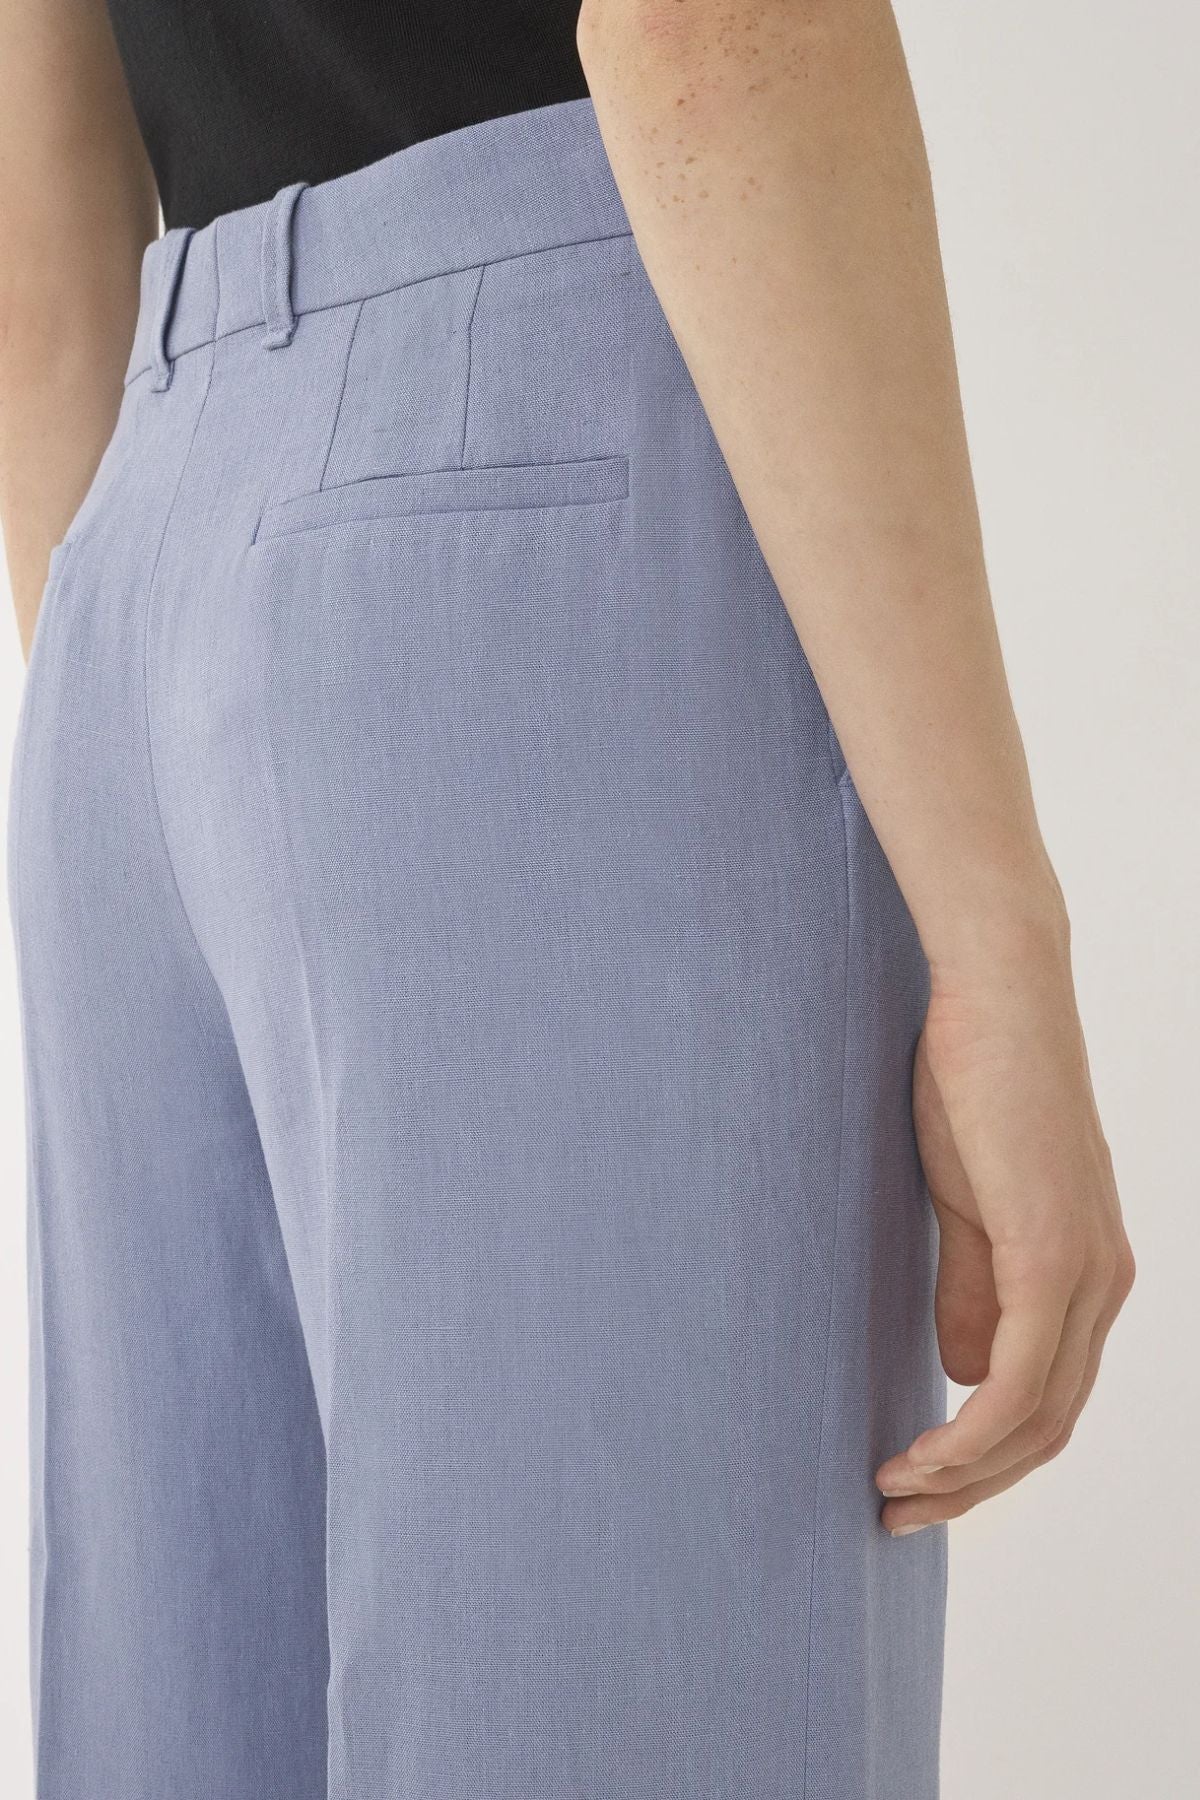 Chloé Linen Canvas Wide Leg Pant - Pebble Blue